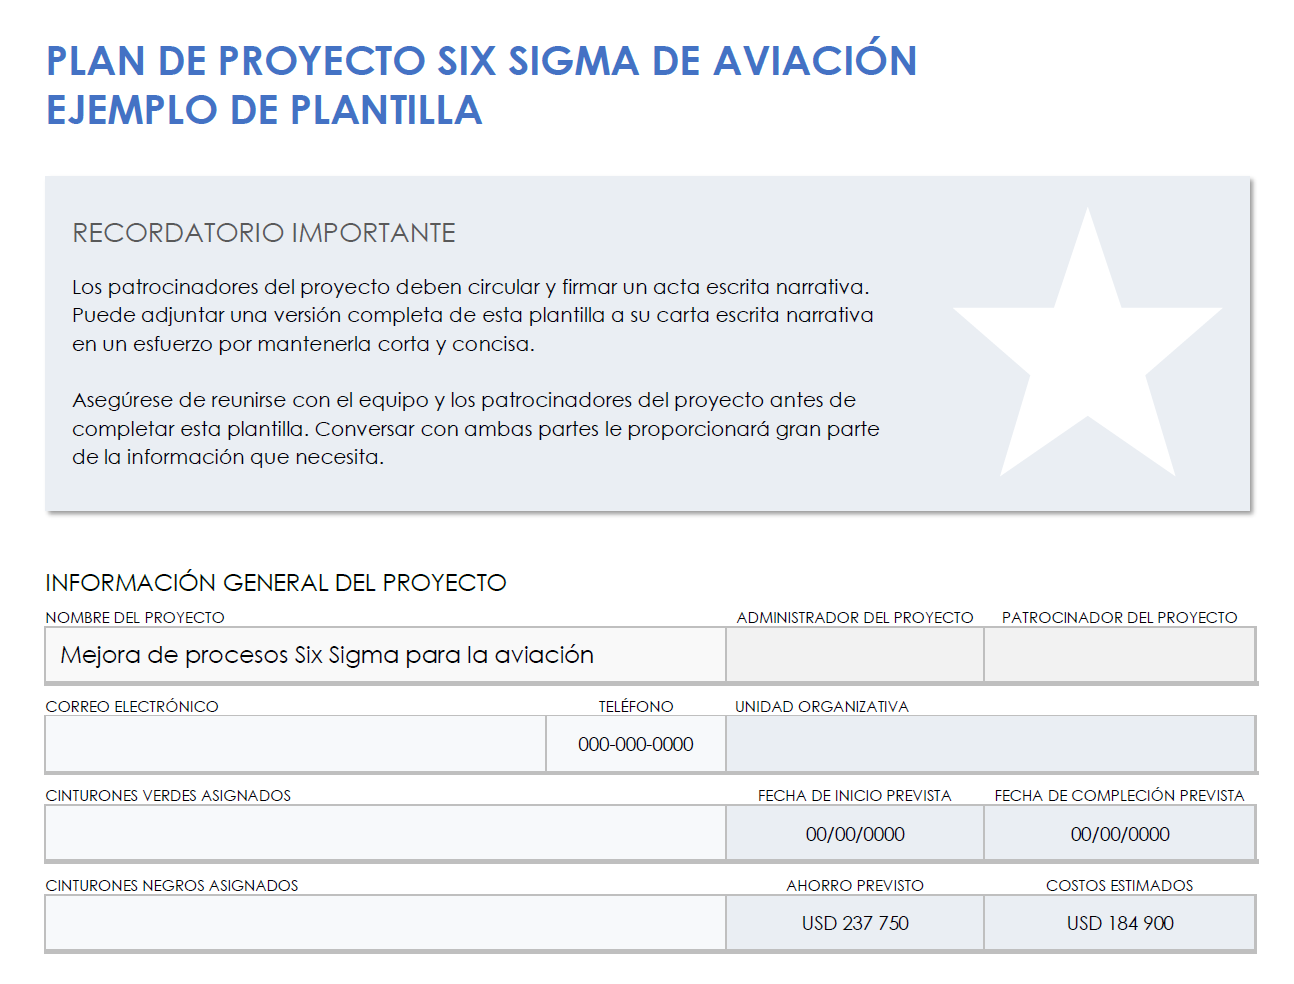 Ejemplo de carta de proyecto de aviación six sigma